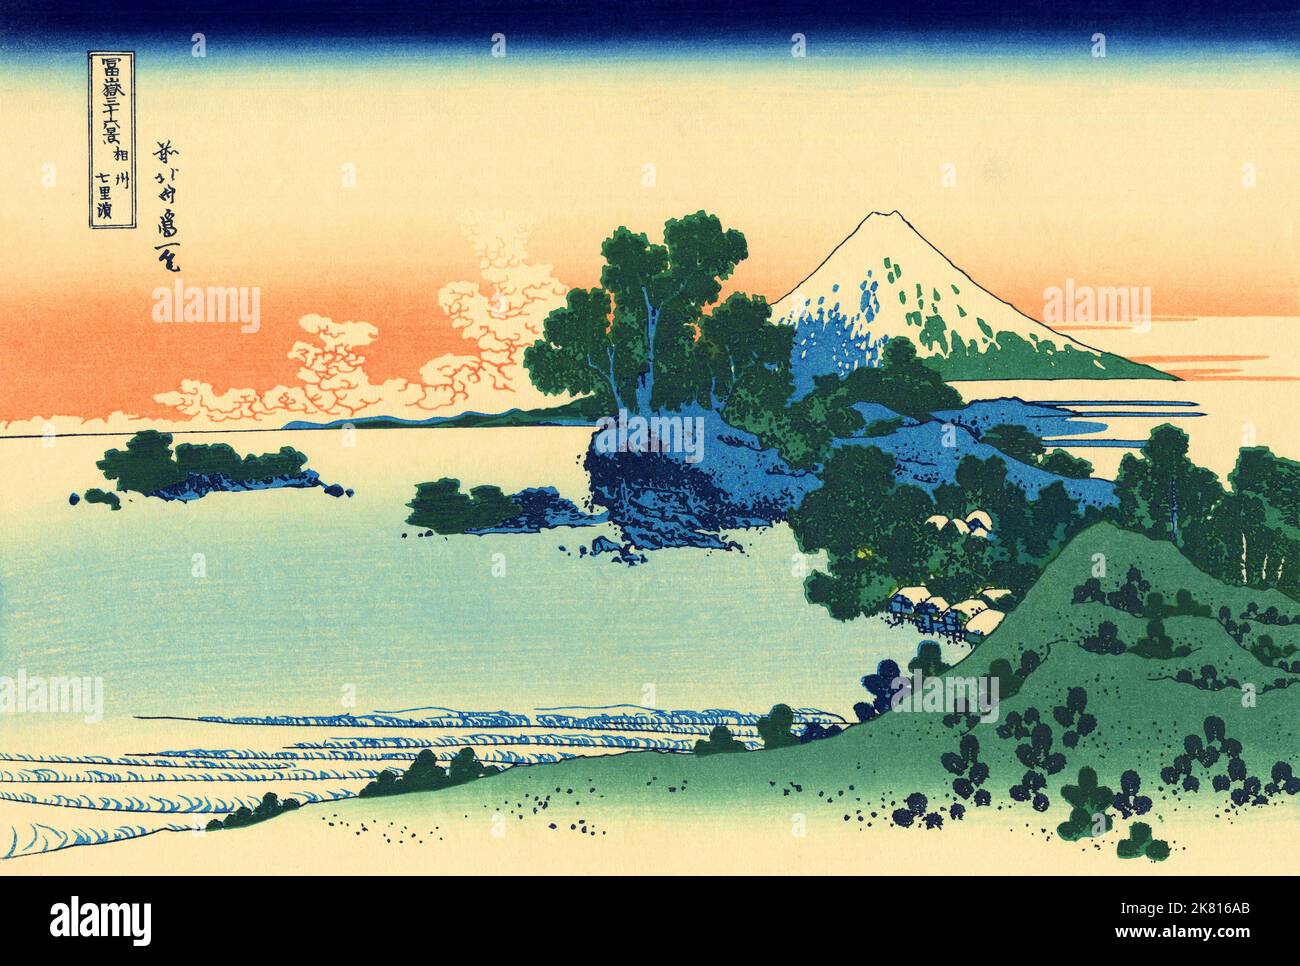 Japón: “Playa de Shichiri en la provincia de Sagami”. Impresión en bloque de madera ukiyo-e de la serie «Treinta y seis vistas del monte Fuji» de Katsushika Hokusai (31 de octubre de 1760 - 10 de mayo de 1849), c. 1830. «36 Vistas del Monte Fuji» es una serie «ukiyo-e» de grandes grabados en madera del artista Katsushika Hokusai. La serie muestra el Monte Fuji en diferentes estaciones y condiciones climáticas desde diversos lugares y distancias. En realidad consiste en 46 impresiones creadas entre 1826 y 1833. Los primeros 36 fueron incluidos en la publicación original y, debido a su popularidad, otros 10 fueron añadidos posteriormente. Foto de stock